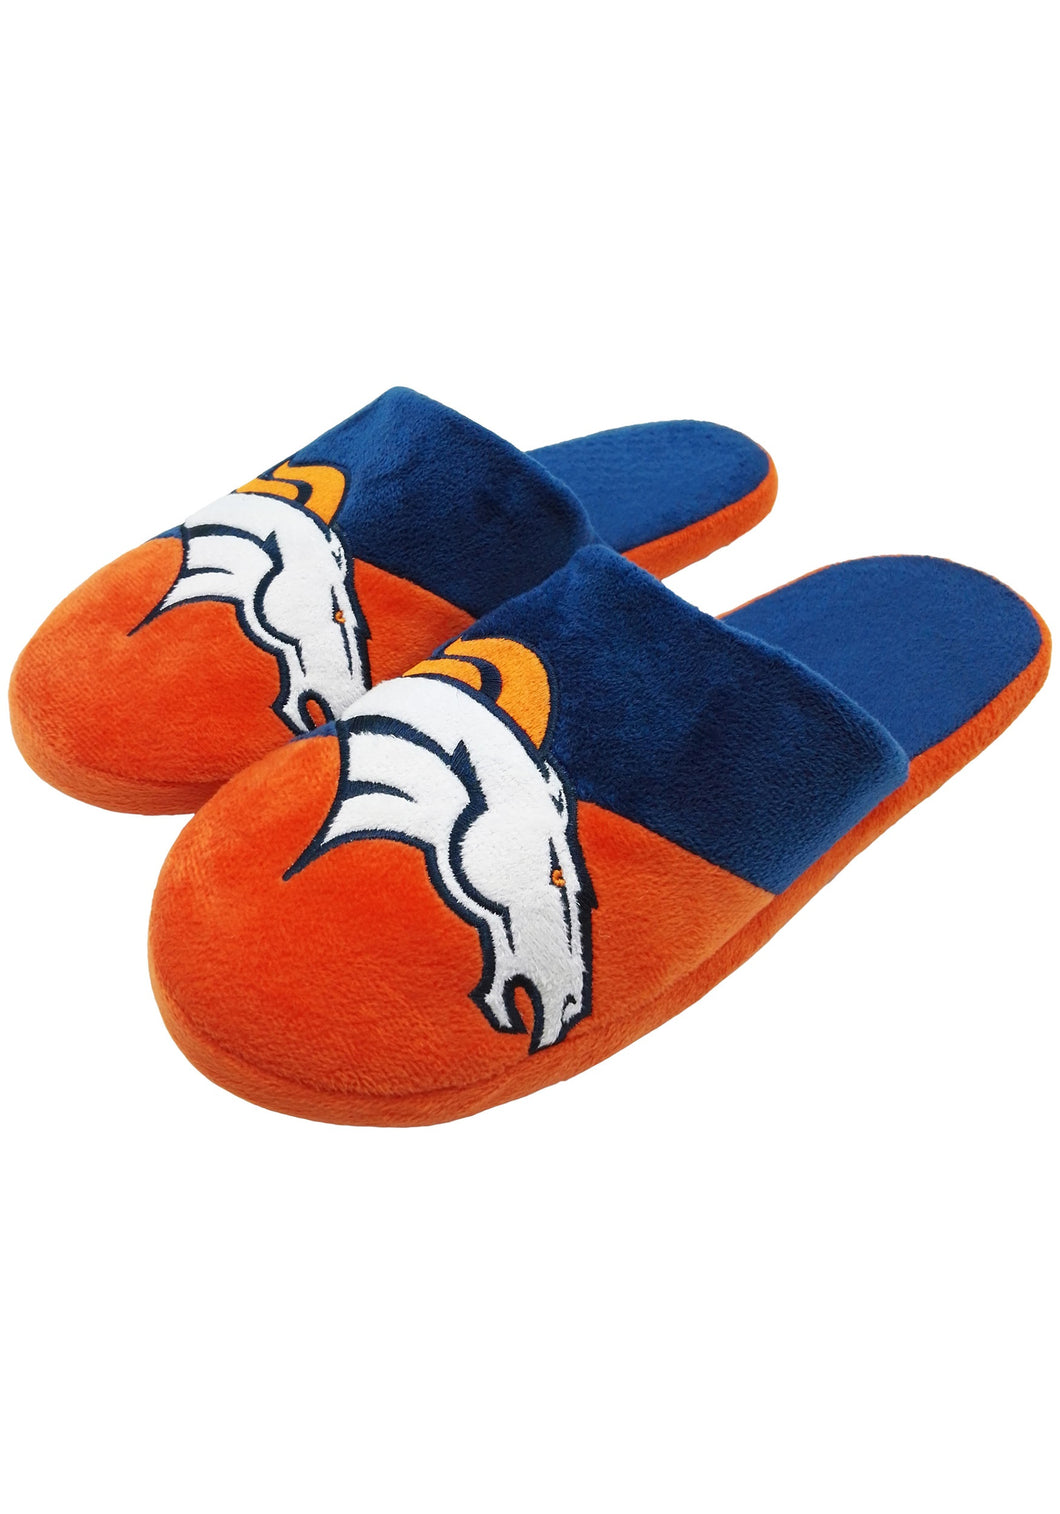 Denver Broncos NFL Colorblock Slide Slippers